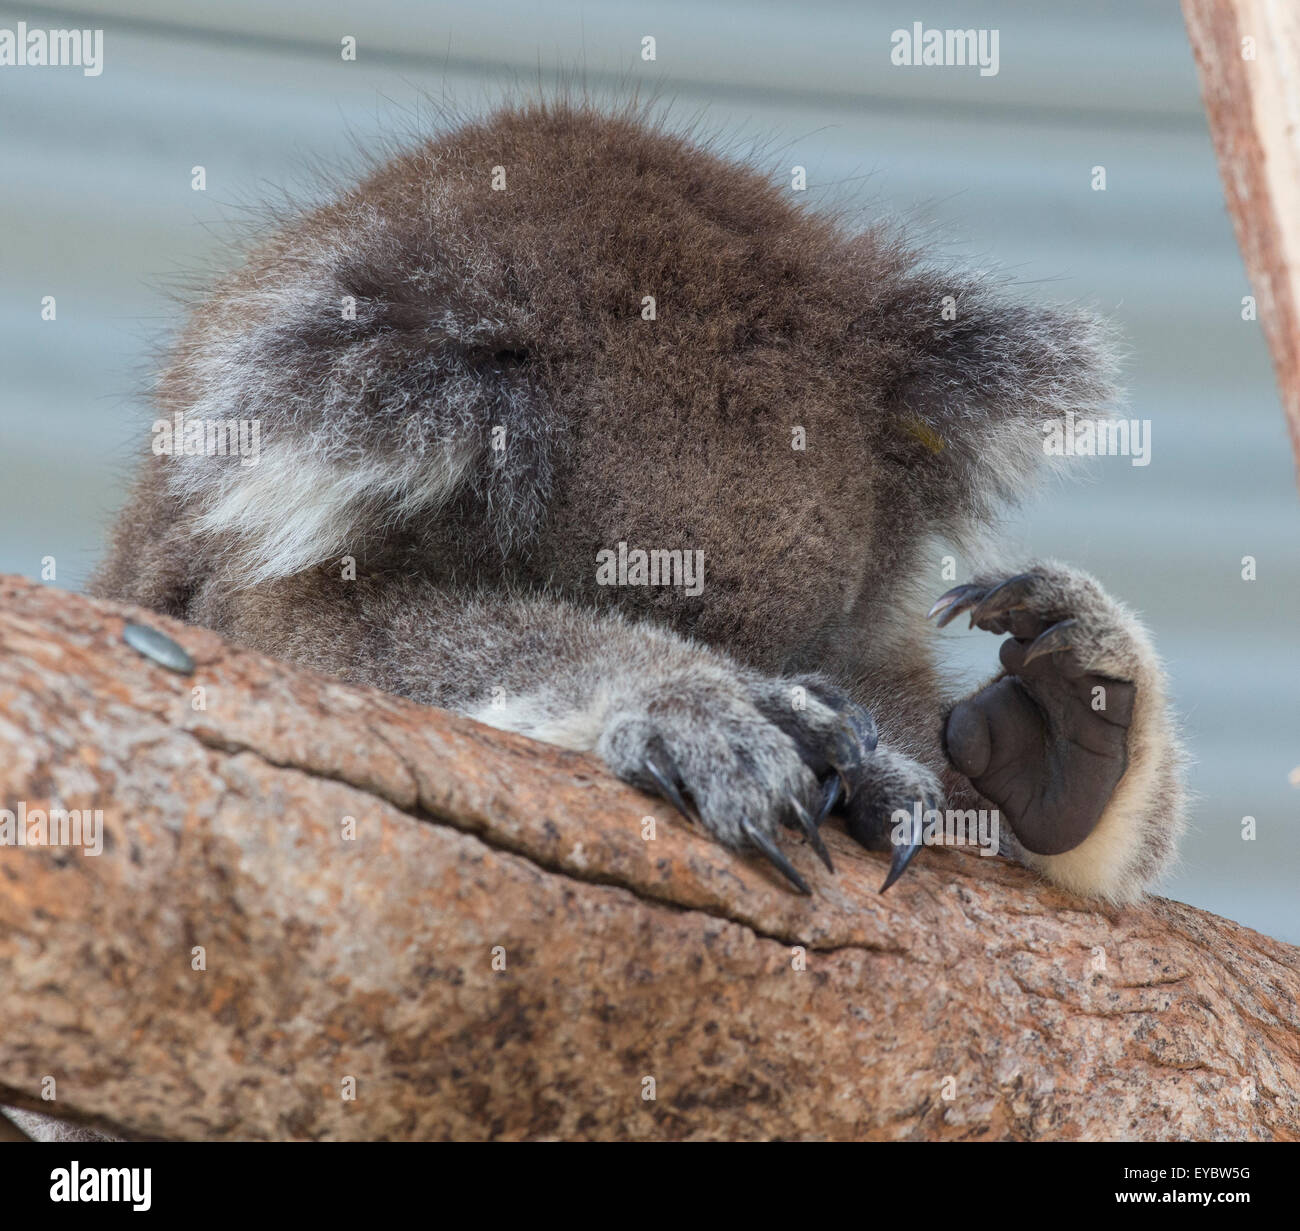 (Tidbinbilla Nature Reserve, Australie---15 mars 2014) Une captive Le Koala (Phascolarctos cinereus) met sa tête sur Banque D'Images